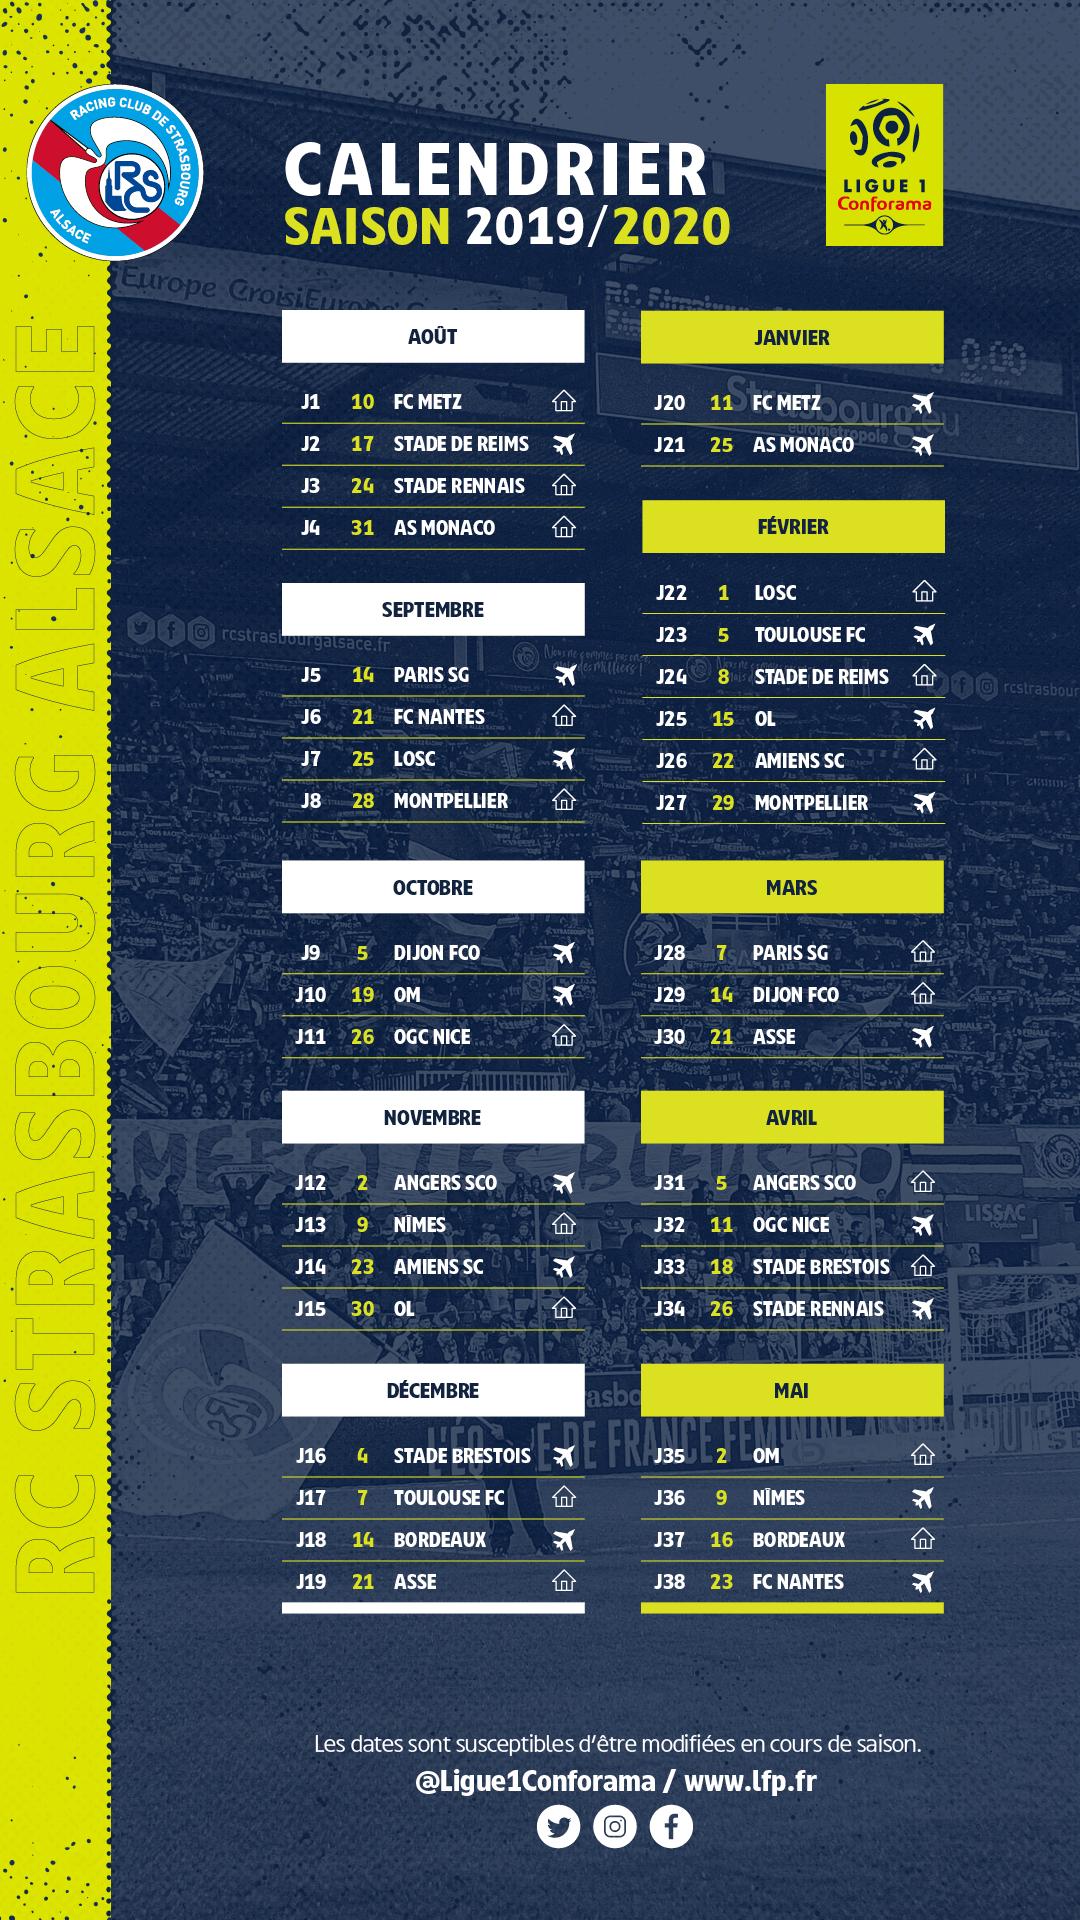 Calendrier Ligue 1 2019 Et 2022 Le calendrier de Ligue 1 Conforama 2019/2020 dévoilé ! | Racing 